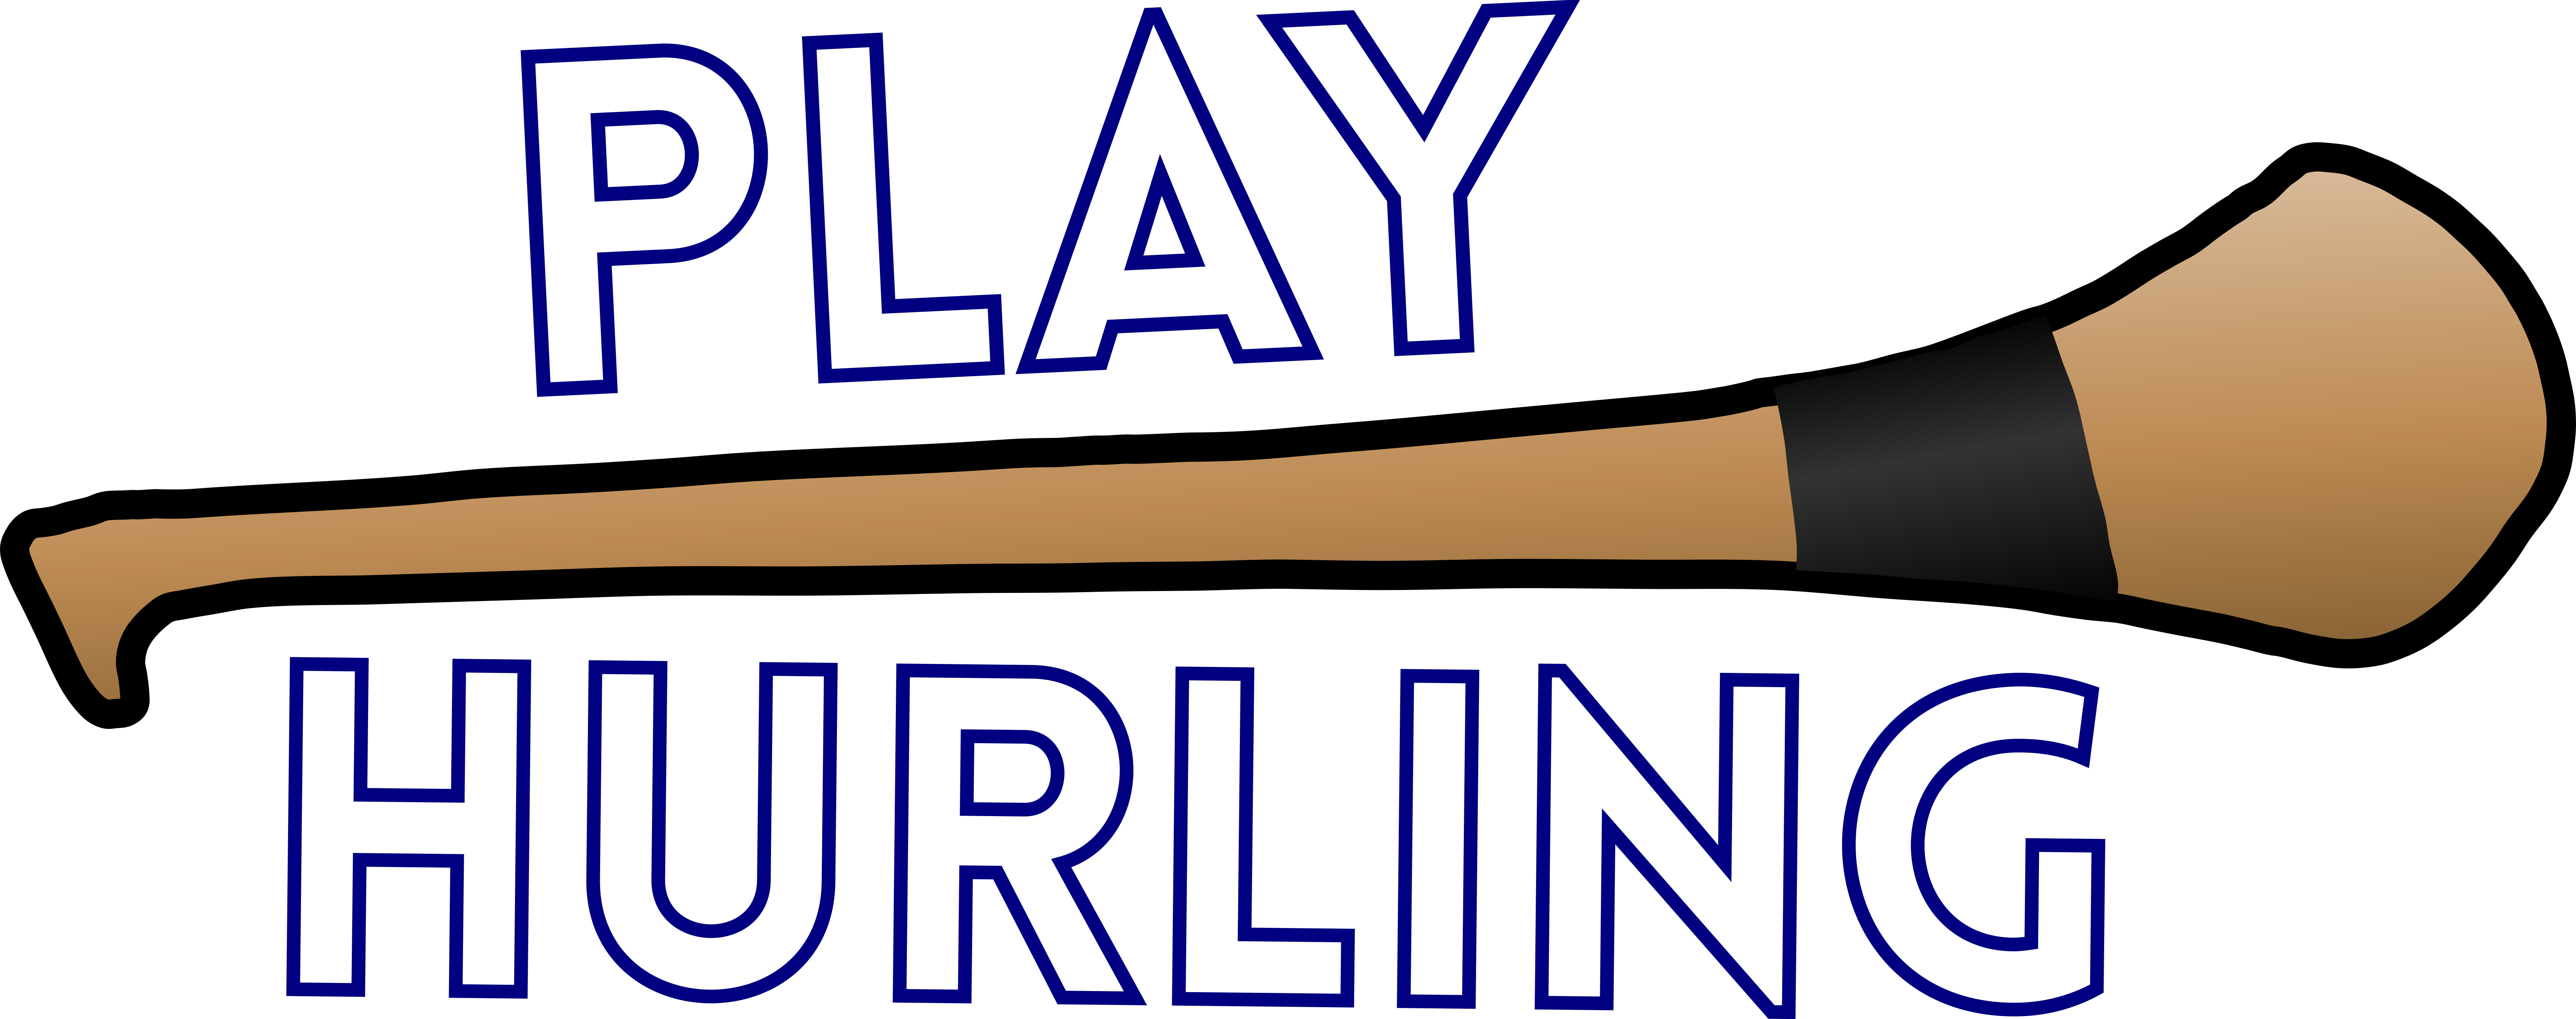 Hurling Logo (6993x2767)